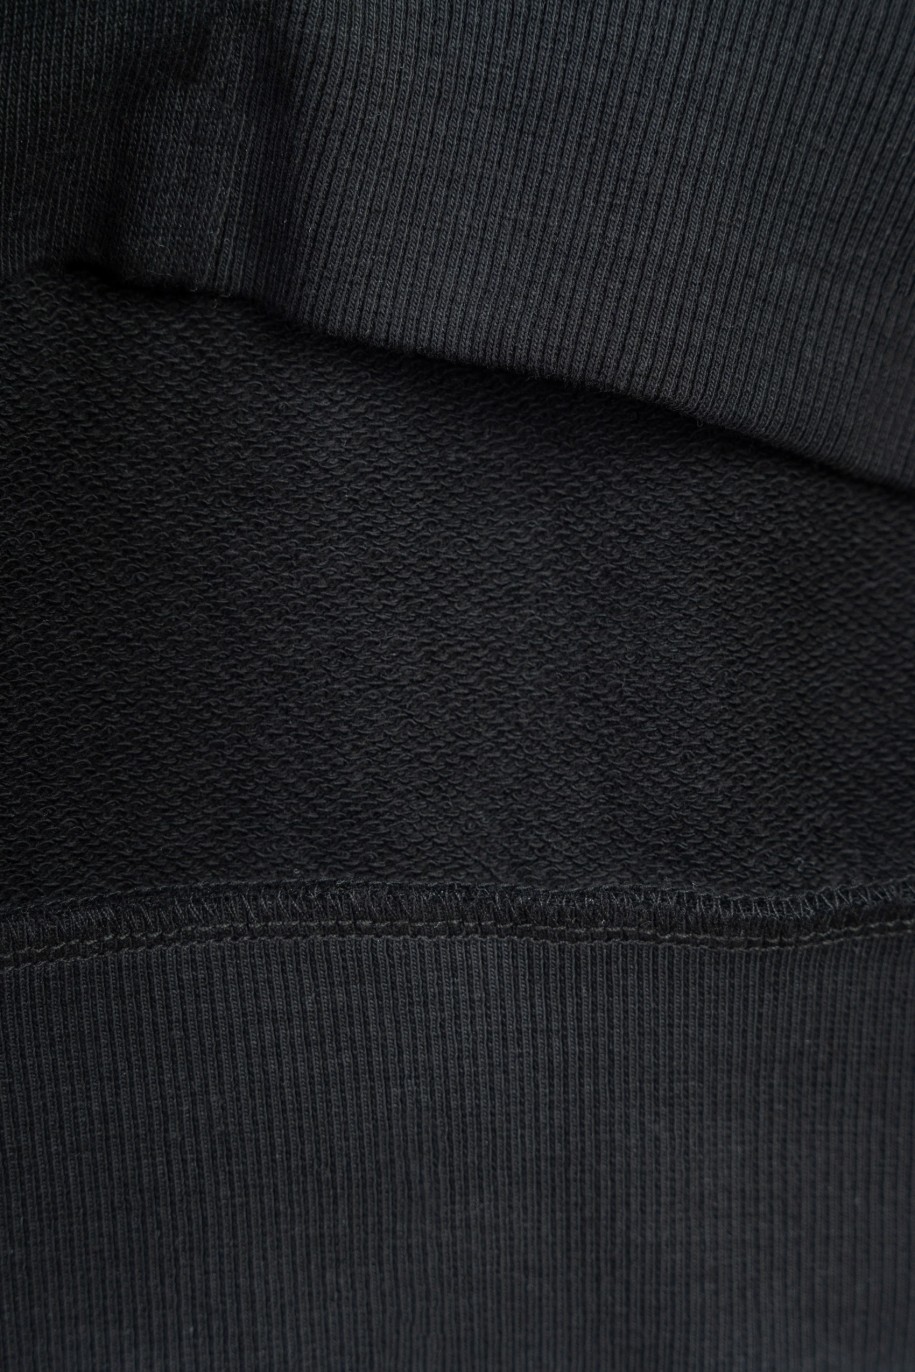 Czarna bluza bomberka z minimalistycznymi nadrukami zapiana na zamek - 47472